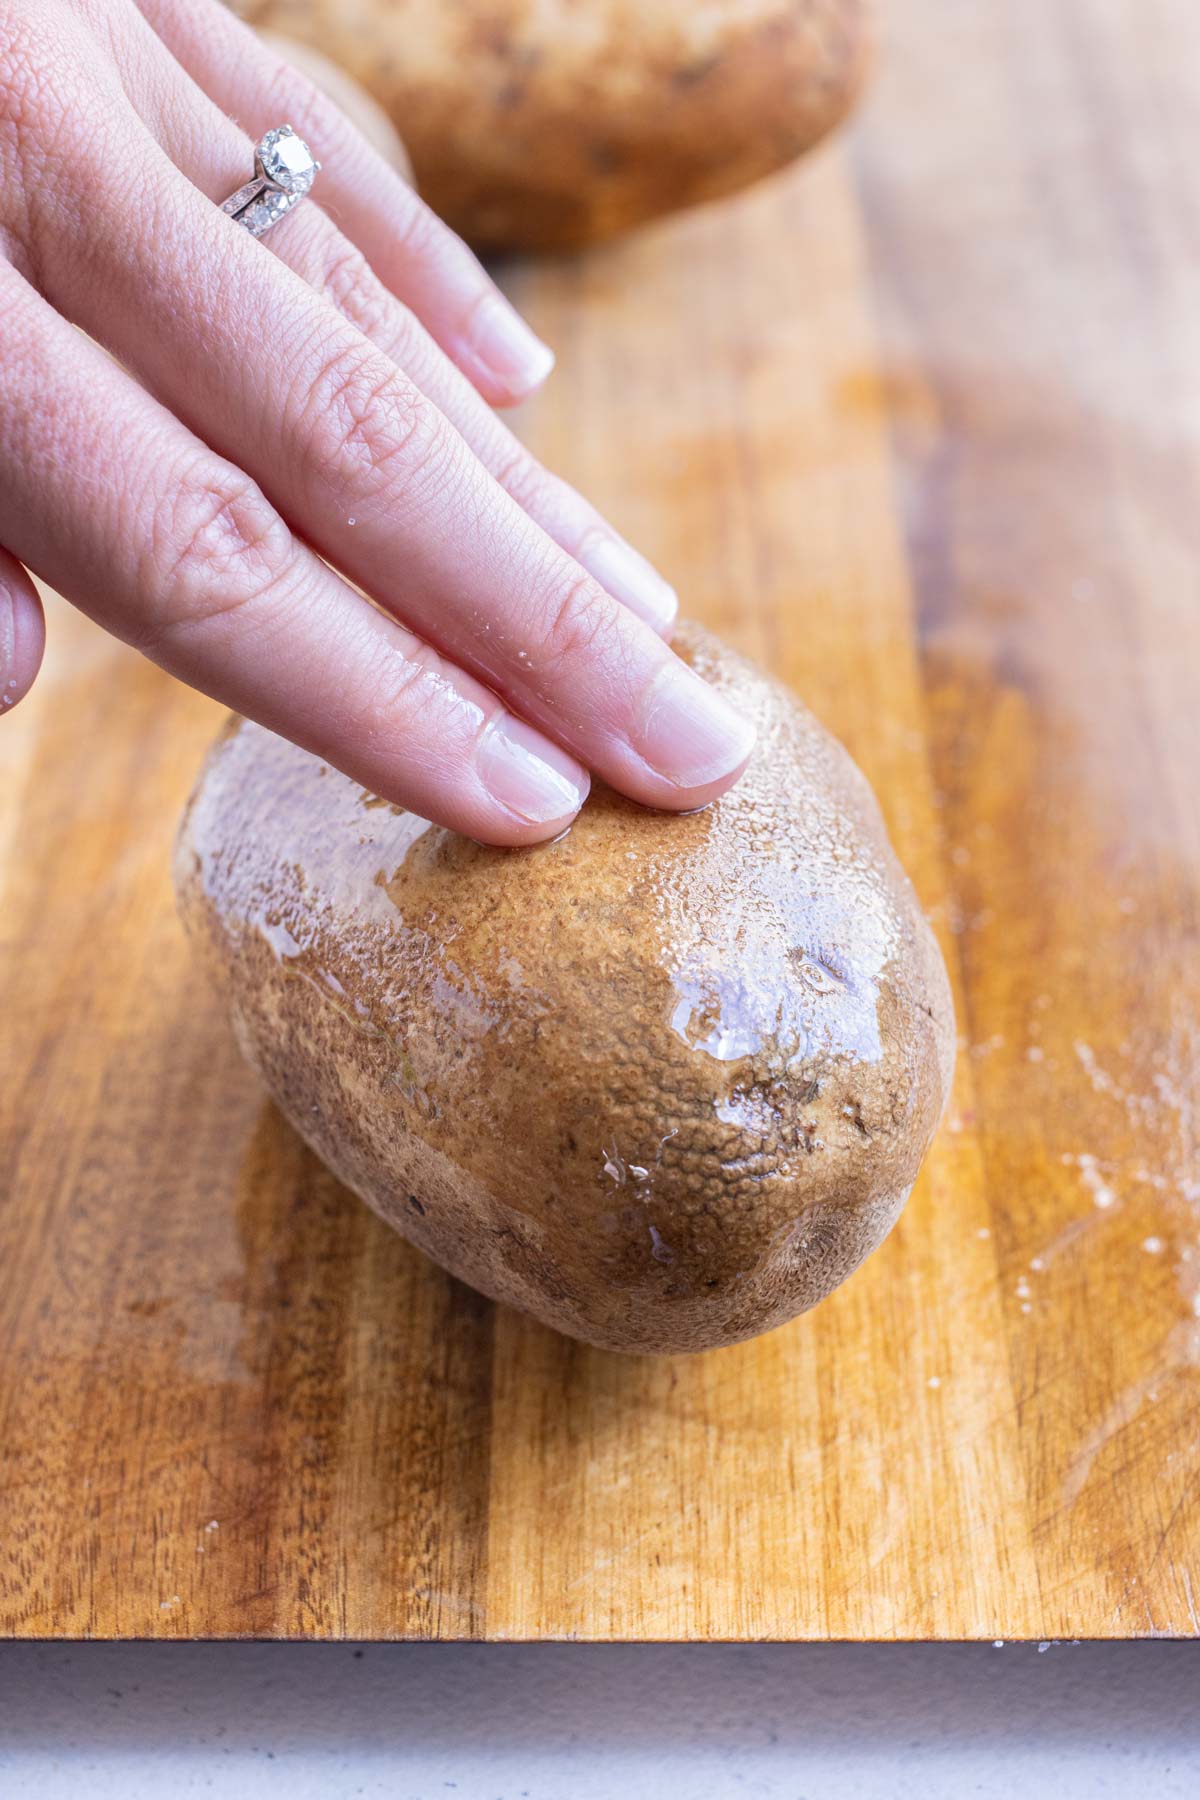 Fingers rub the oil into a potato.